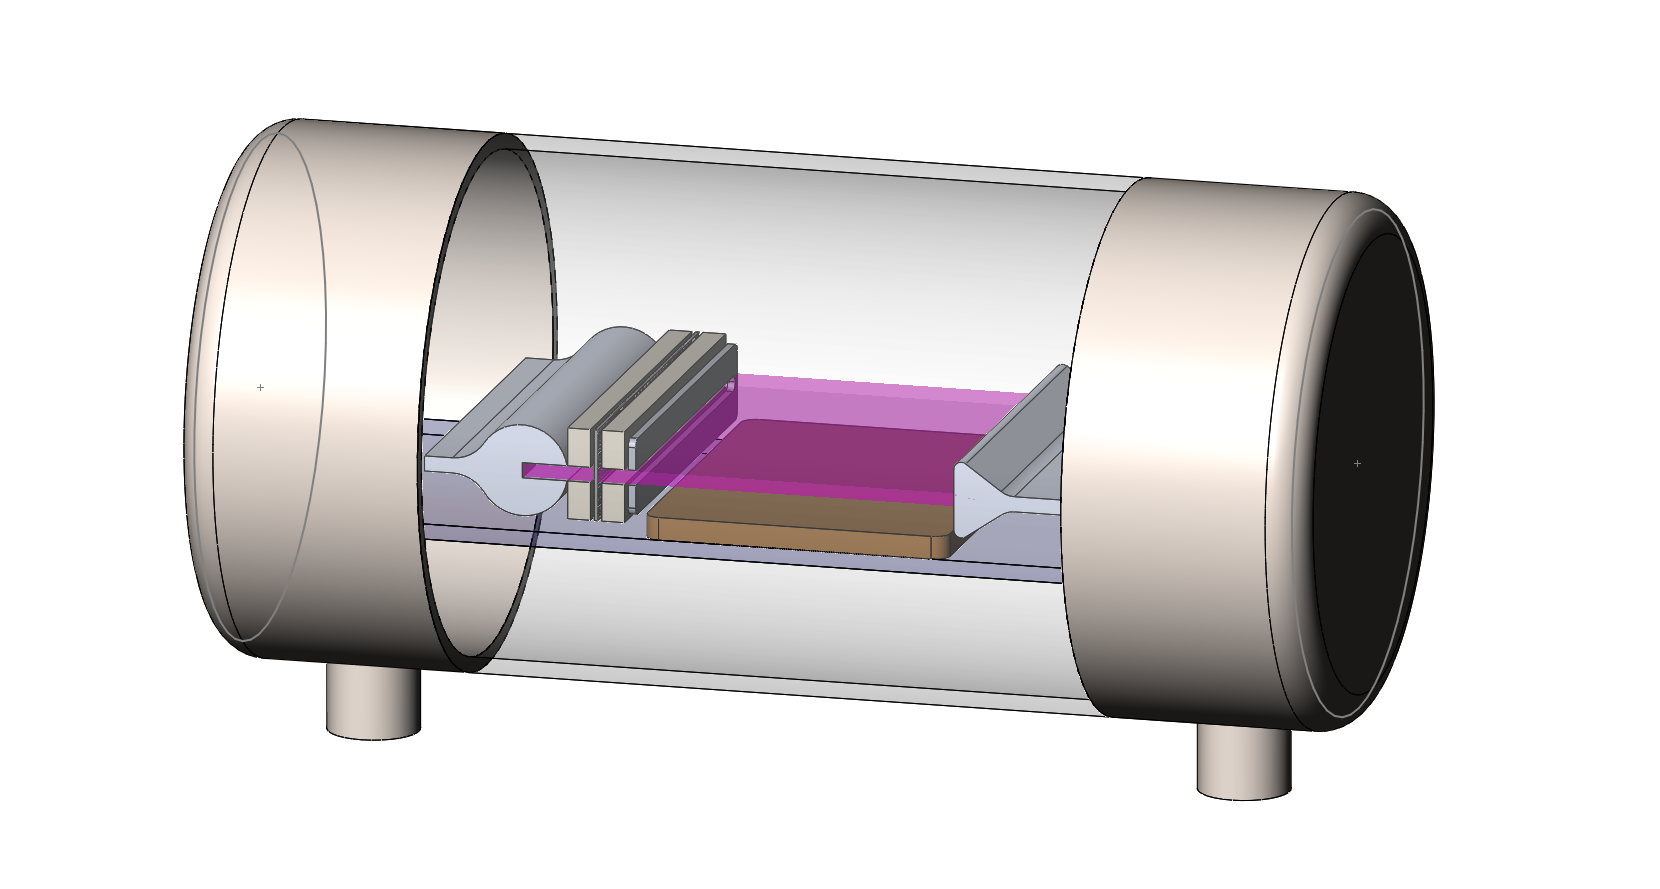 Разработка широкоапертурного плазменного источника ионных потоков для прецизионных технологий АСТ материалов наноэлектроники.